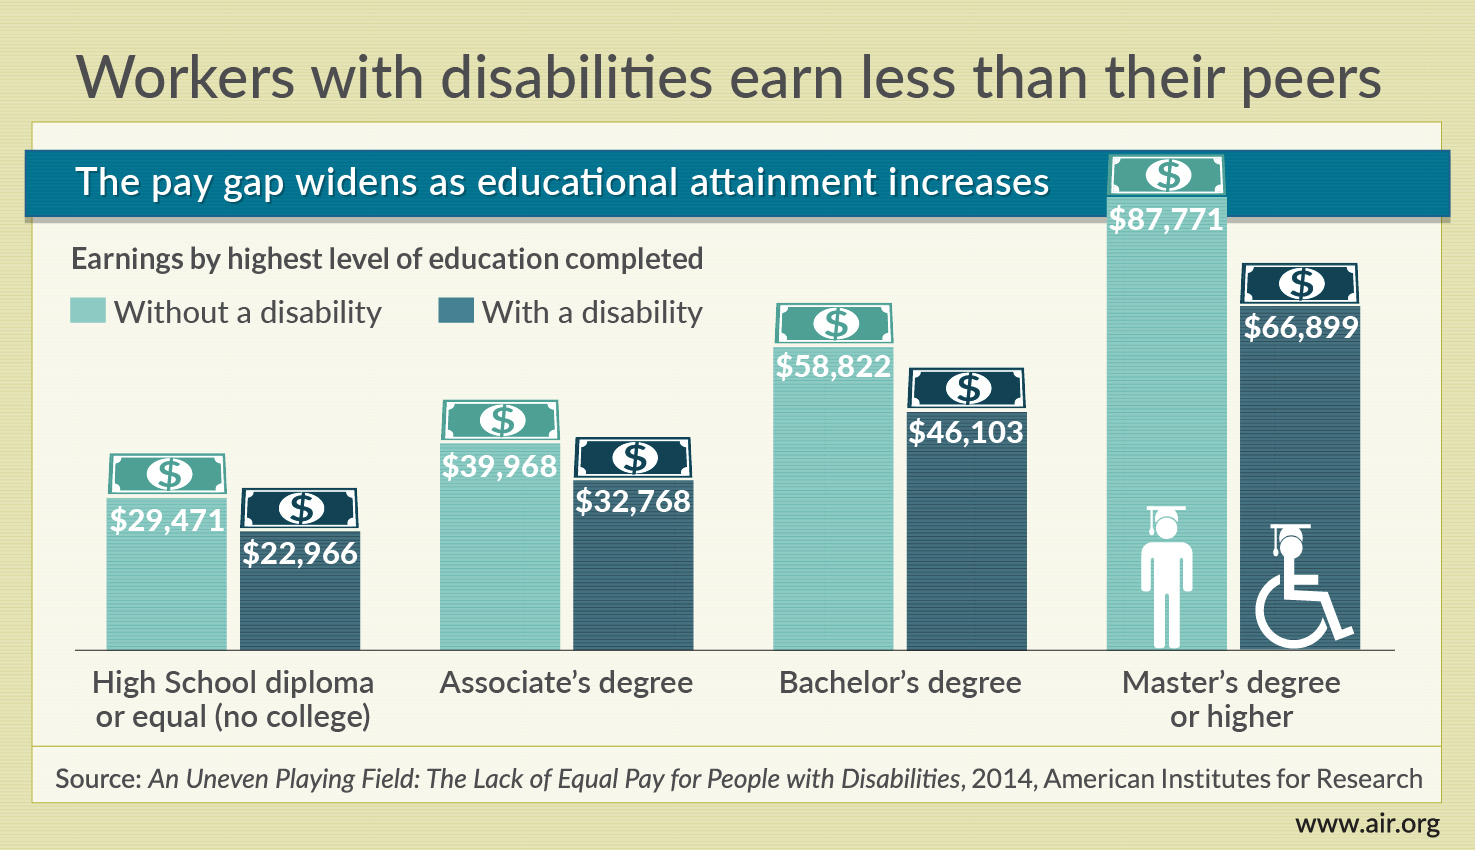 残疾人赚的比同龄人赚得少。Infographic通过教育水平比较薪酬差异